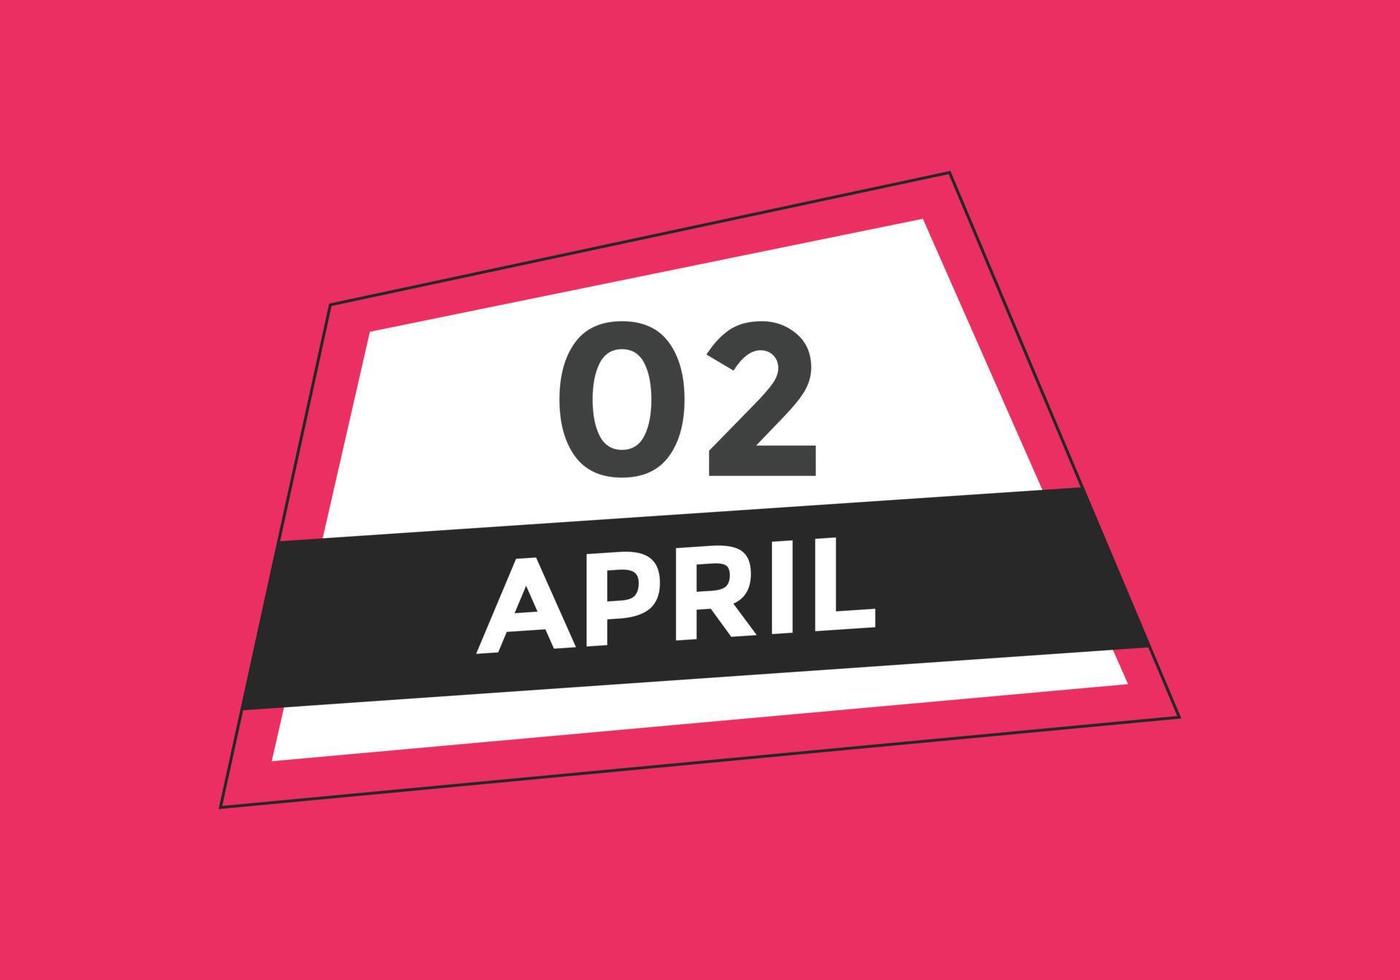 lembrete de calendário de 2 de abril. Modelo de ícone de calendário diário de 2 de abril. modelo de design de ícone de calendário 2 de abril. ilustração vetorial vetor